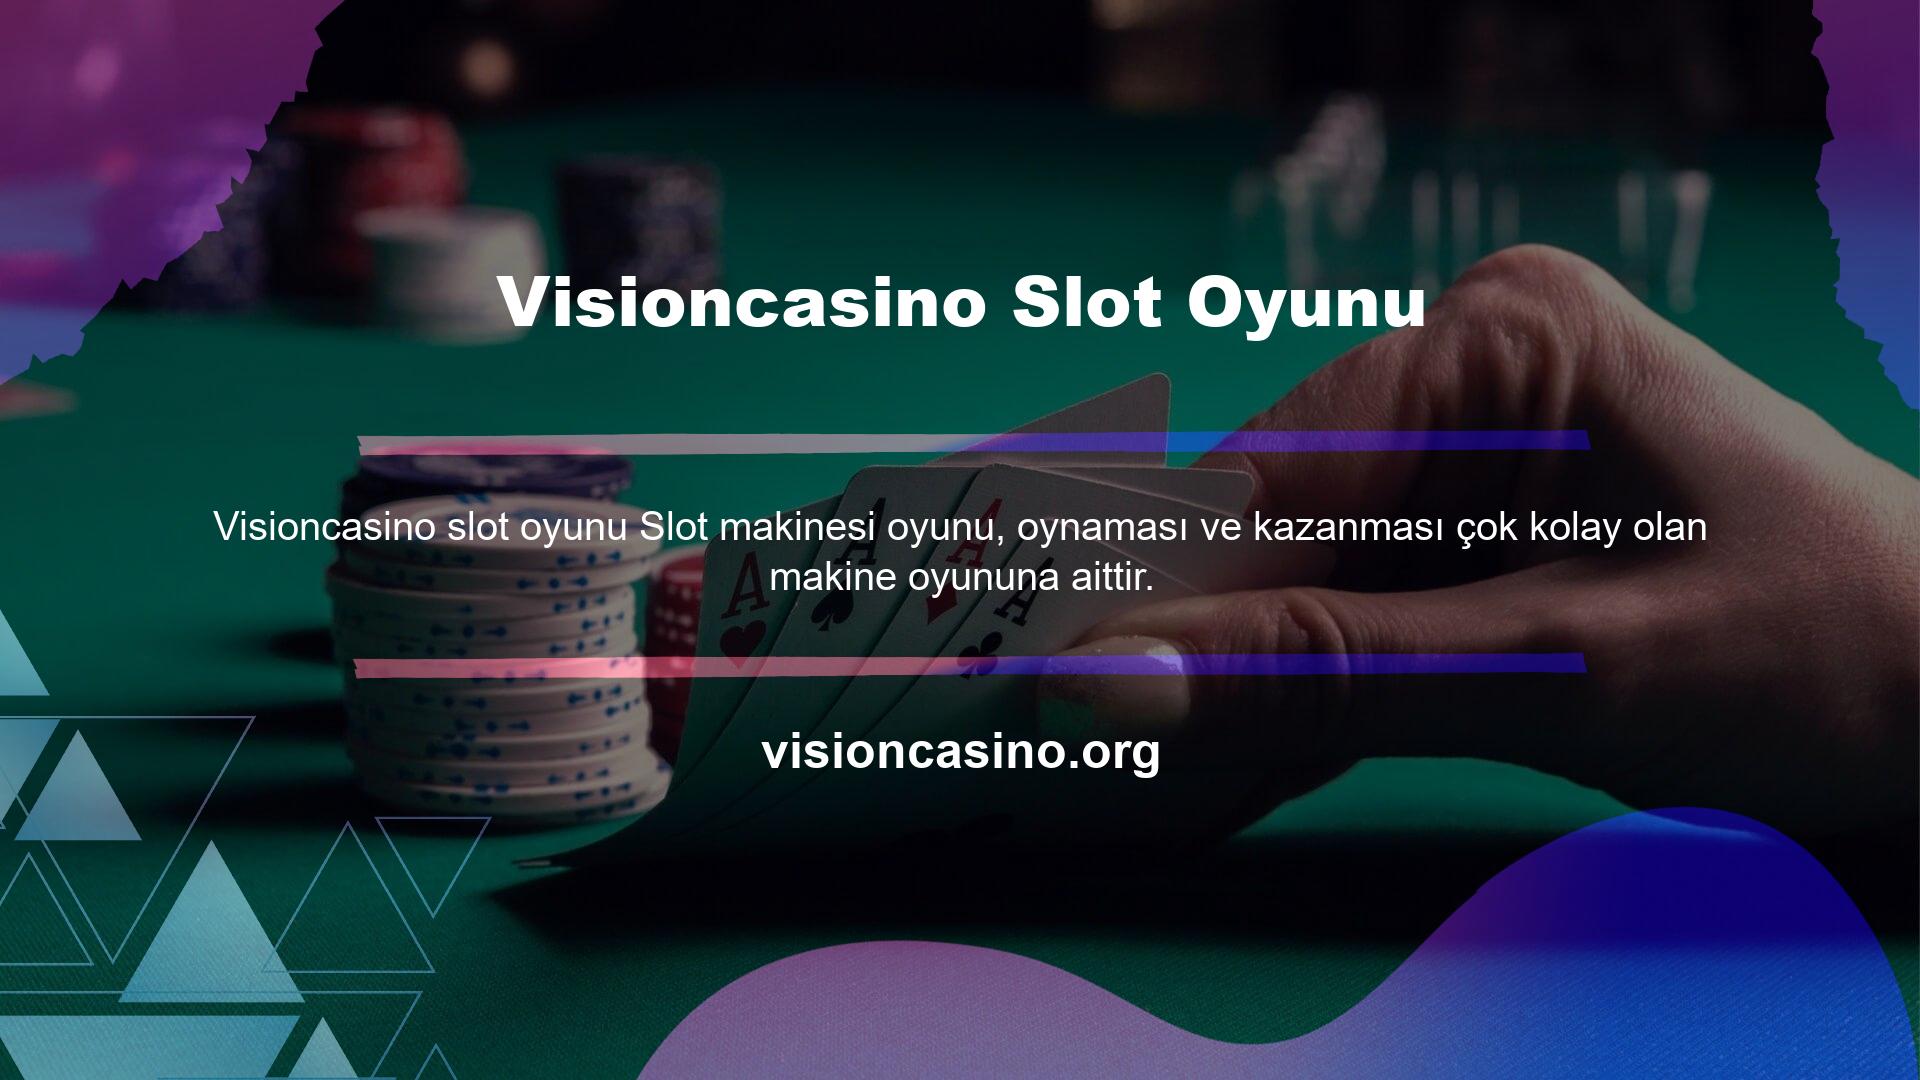 Visioncasino Slot Oyunu Kaldıraçlar veya düğmeler kullanılarak oynanan bu oyunlarda oyunun grafikleri ve hikayesi değişse de temel mantık aynı nesnelerin belirli bir düzende dizilmesi üzerine kuruludur